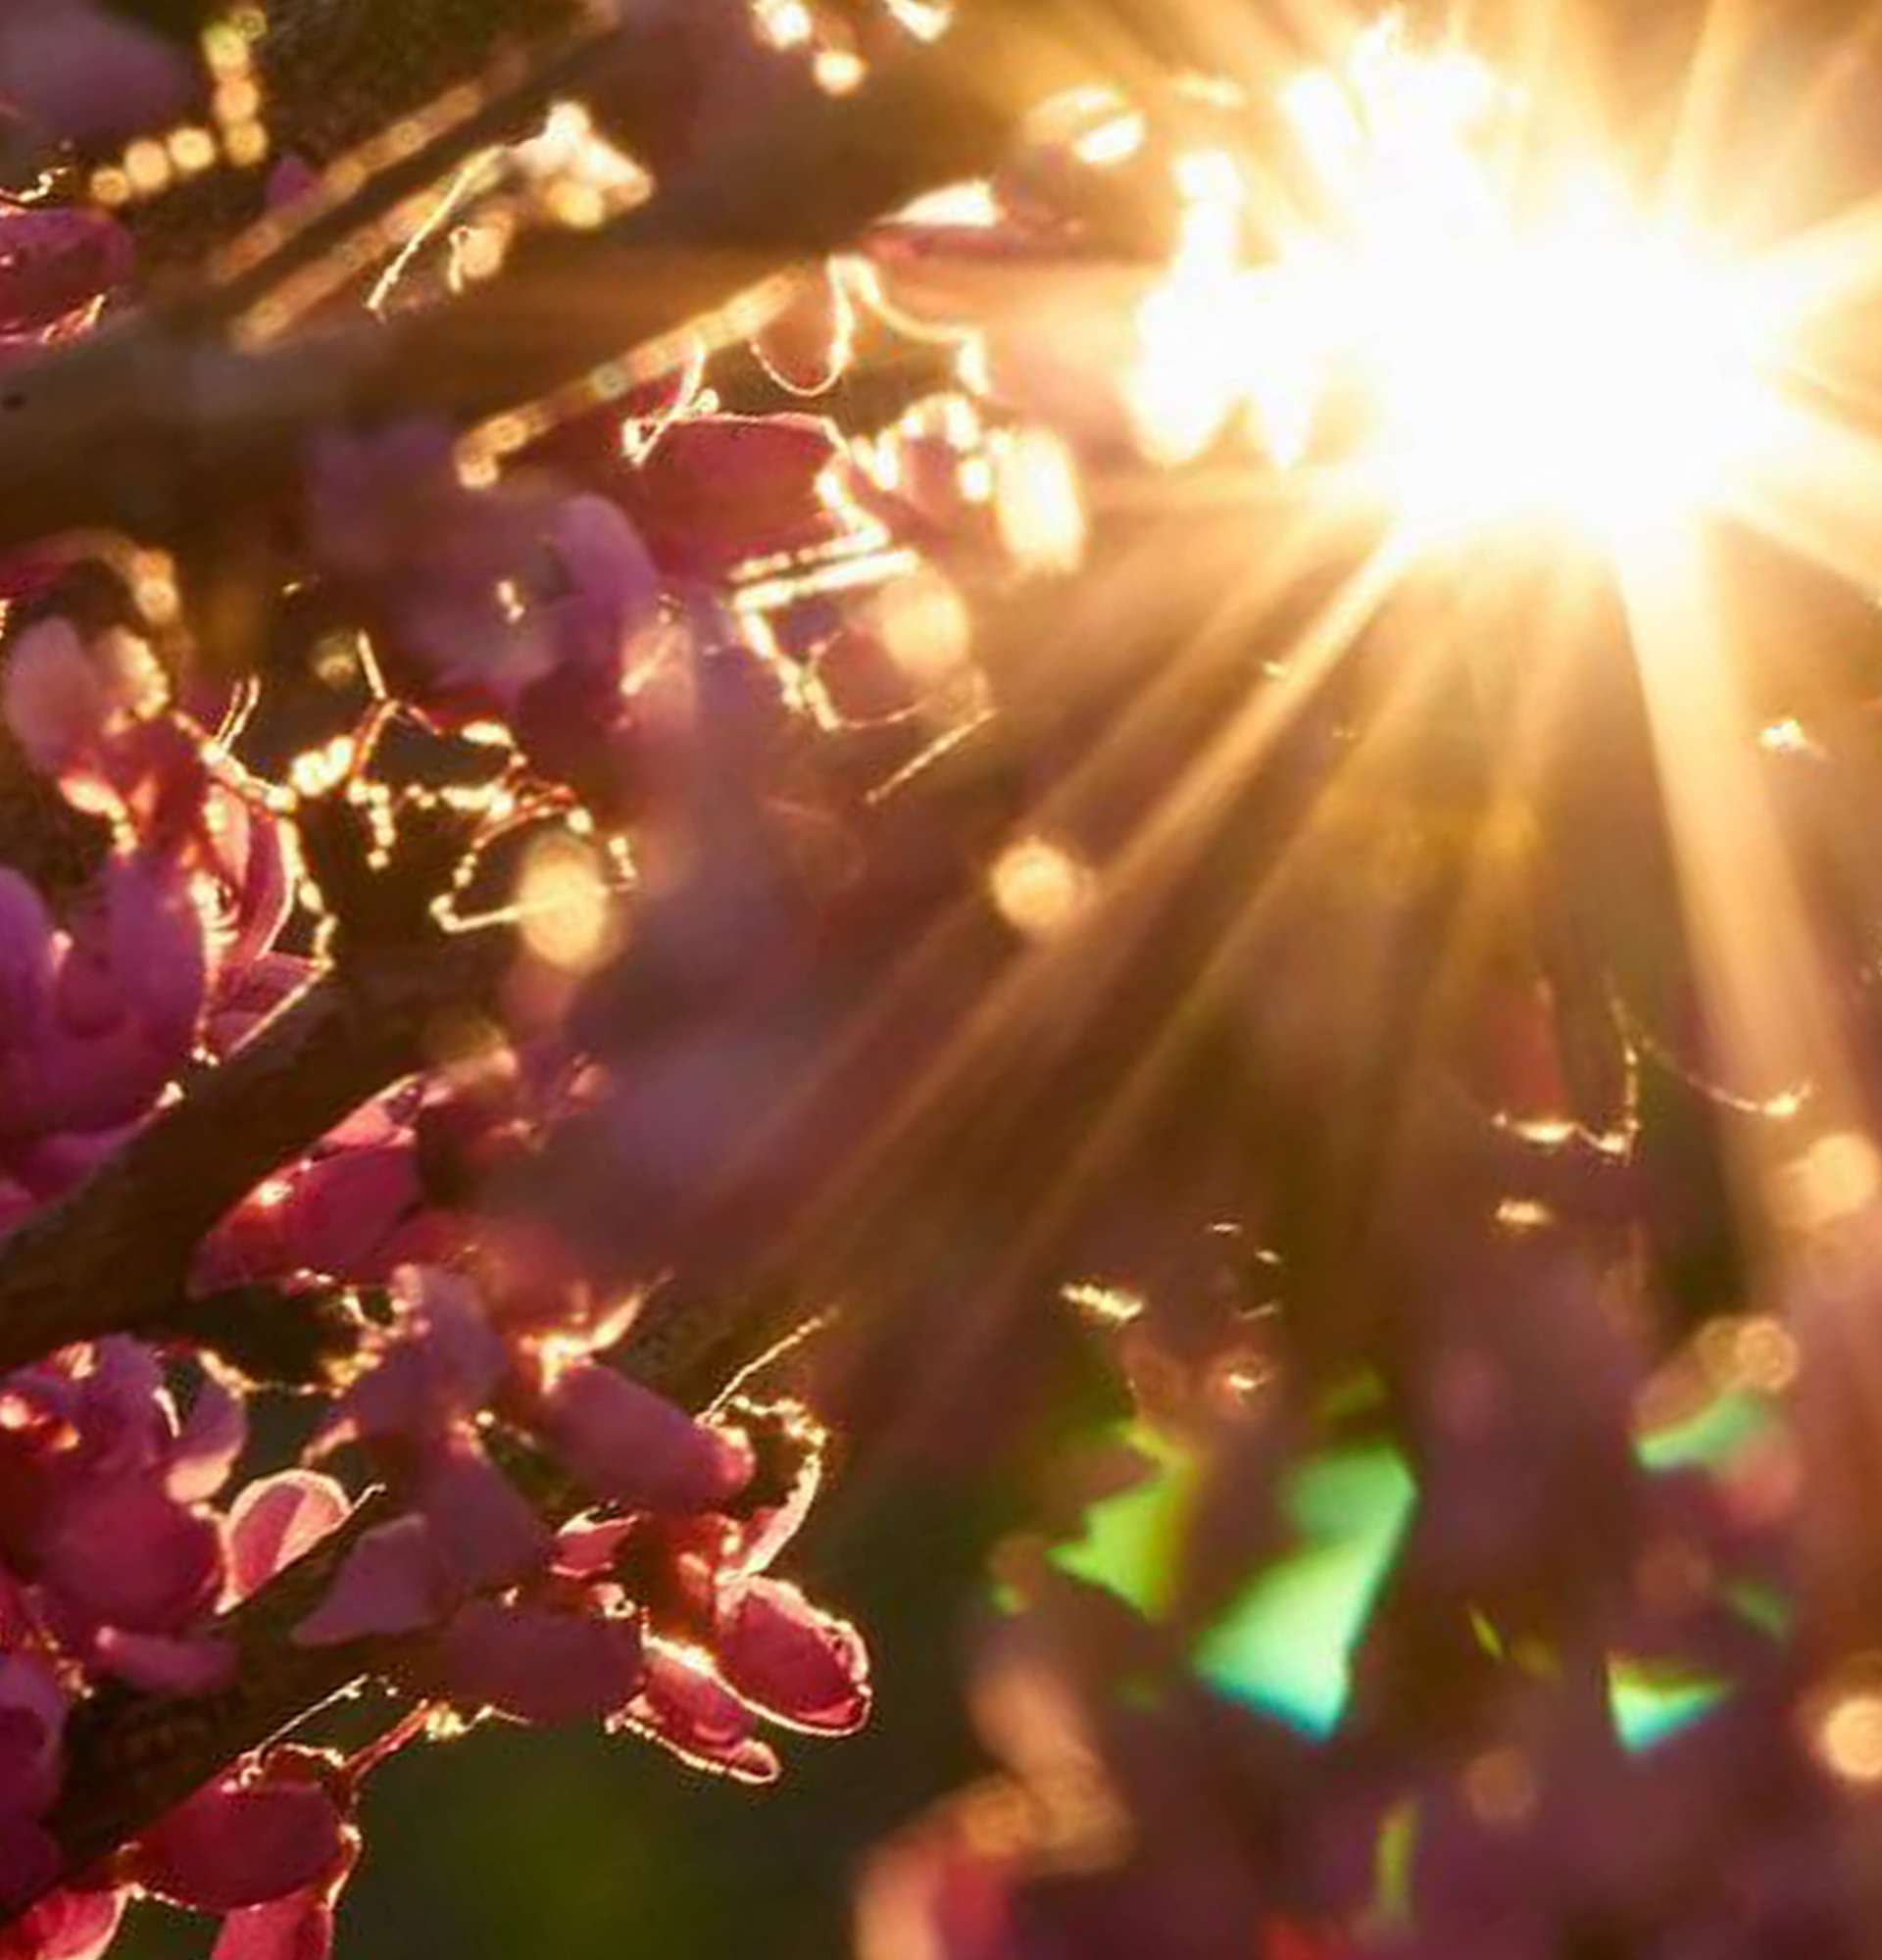  иудино дерево фото - солнце в цветах